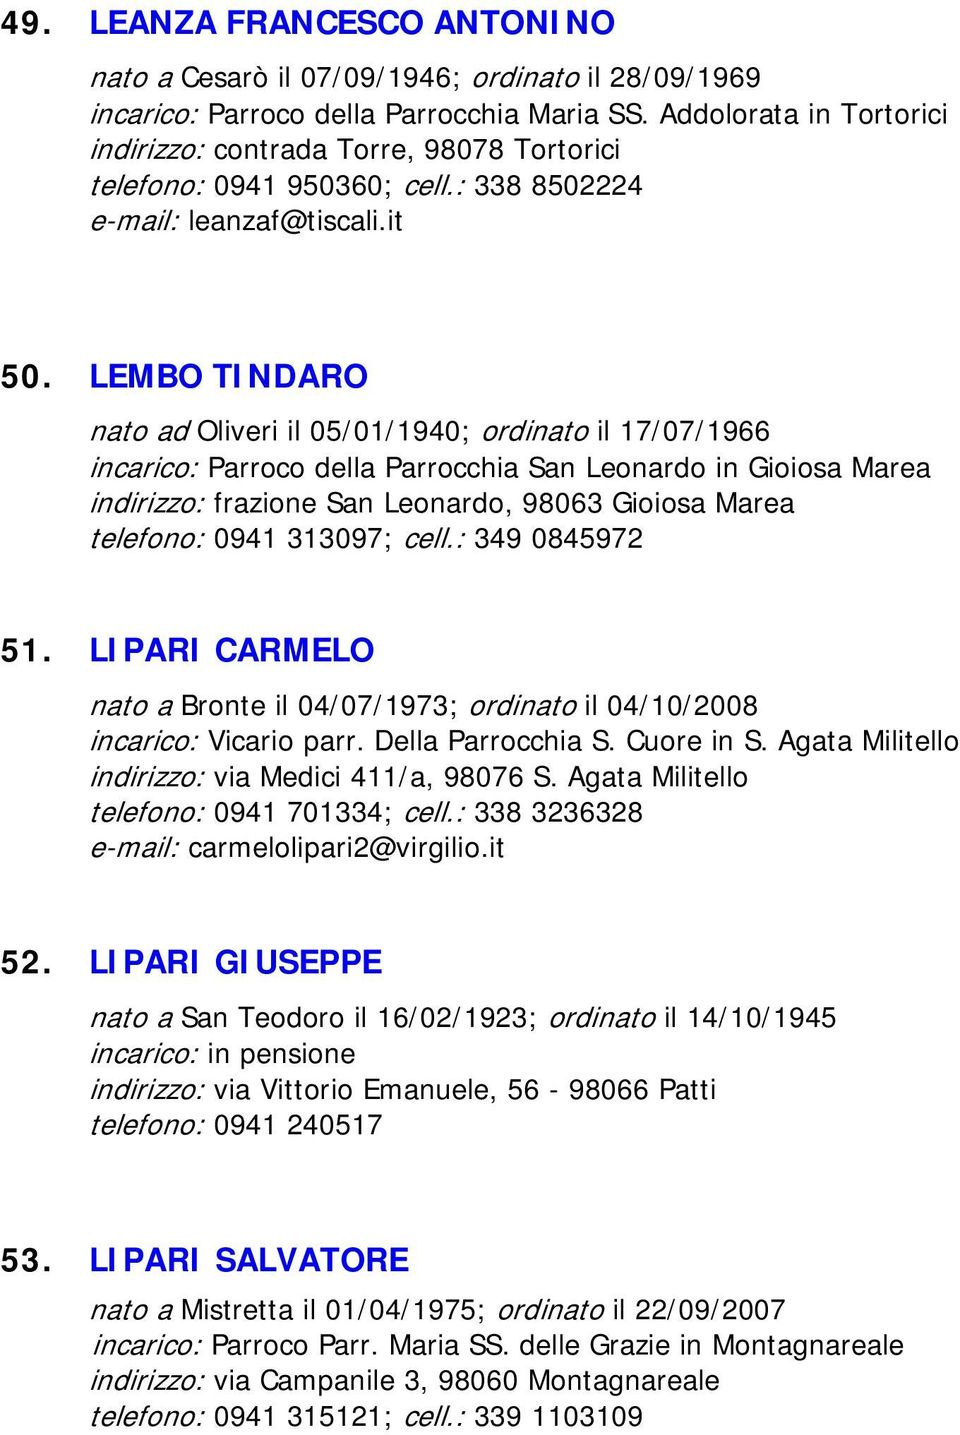 LEMBO TINDARO nato ad Oliveri il 05/01/1940; ordinato il 17/07/1966 incarico: Parroco della Parrocchia San Leonardo in Gioiosa Marea indirizzo: frazione San Leonardo, 98063 Gioiosa Marea telefono: